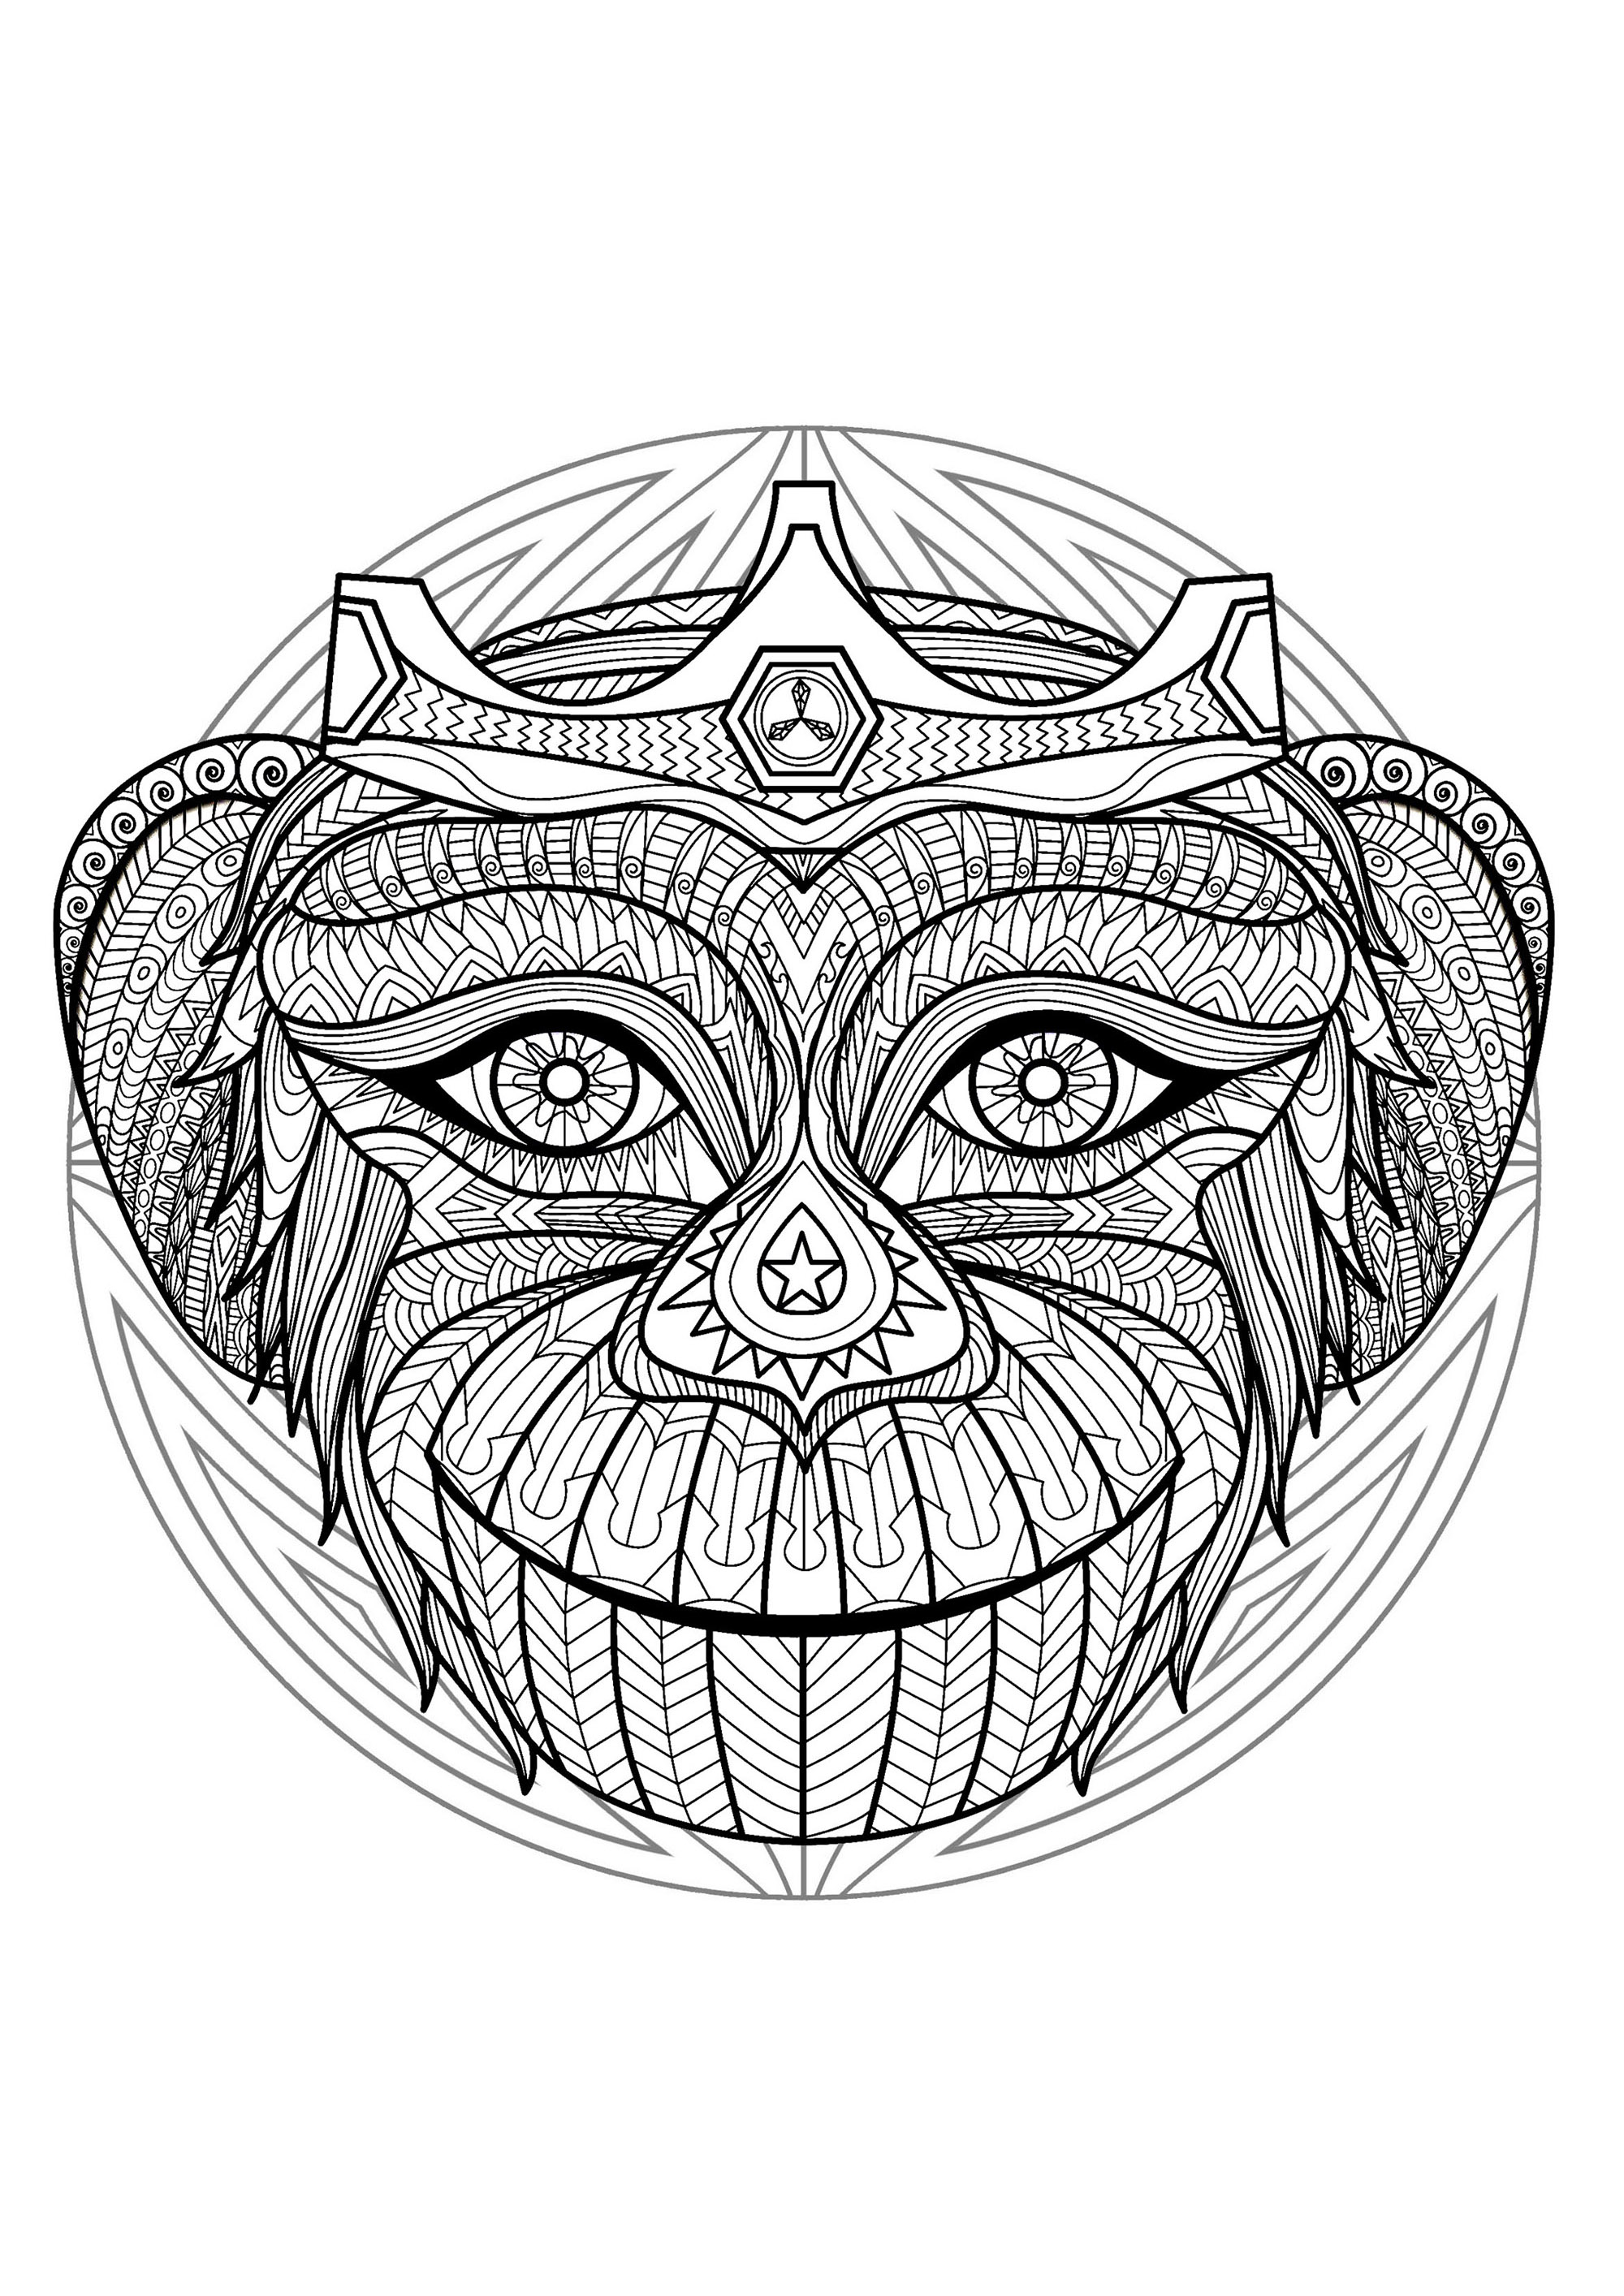 Ein Mandala mit einem verspielten Affen, für alle, die lieber konkrete und lebendige Elemente in Farbe umsetzen möchten. Den Frieden in uns wiederherstellen, kreativer werden, eine Qualität entwickeln, das Loslassen fördern... Das alles ermöglichen Mandalas.